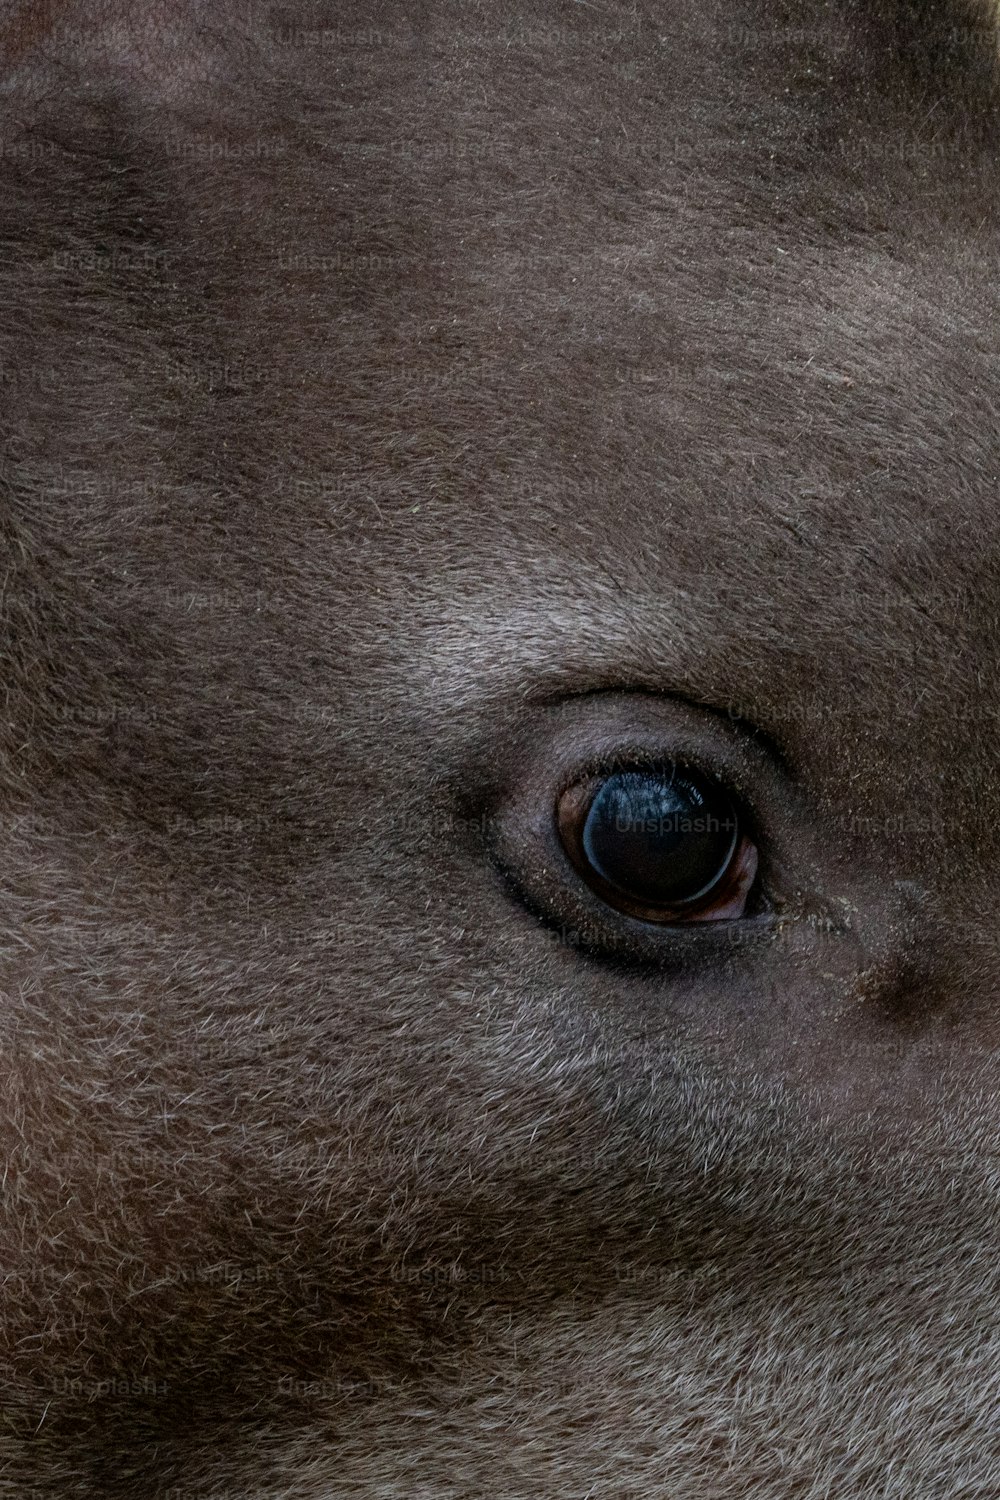 um close up do olho de um animal marrom